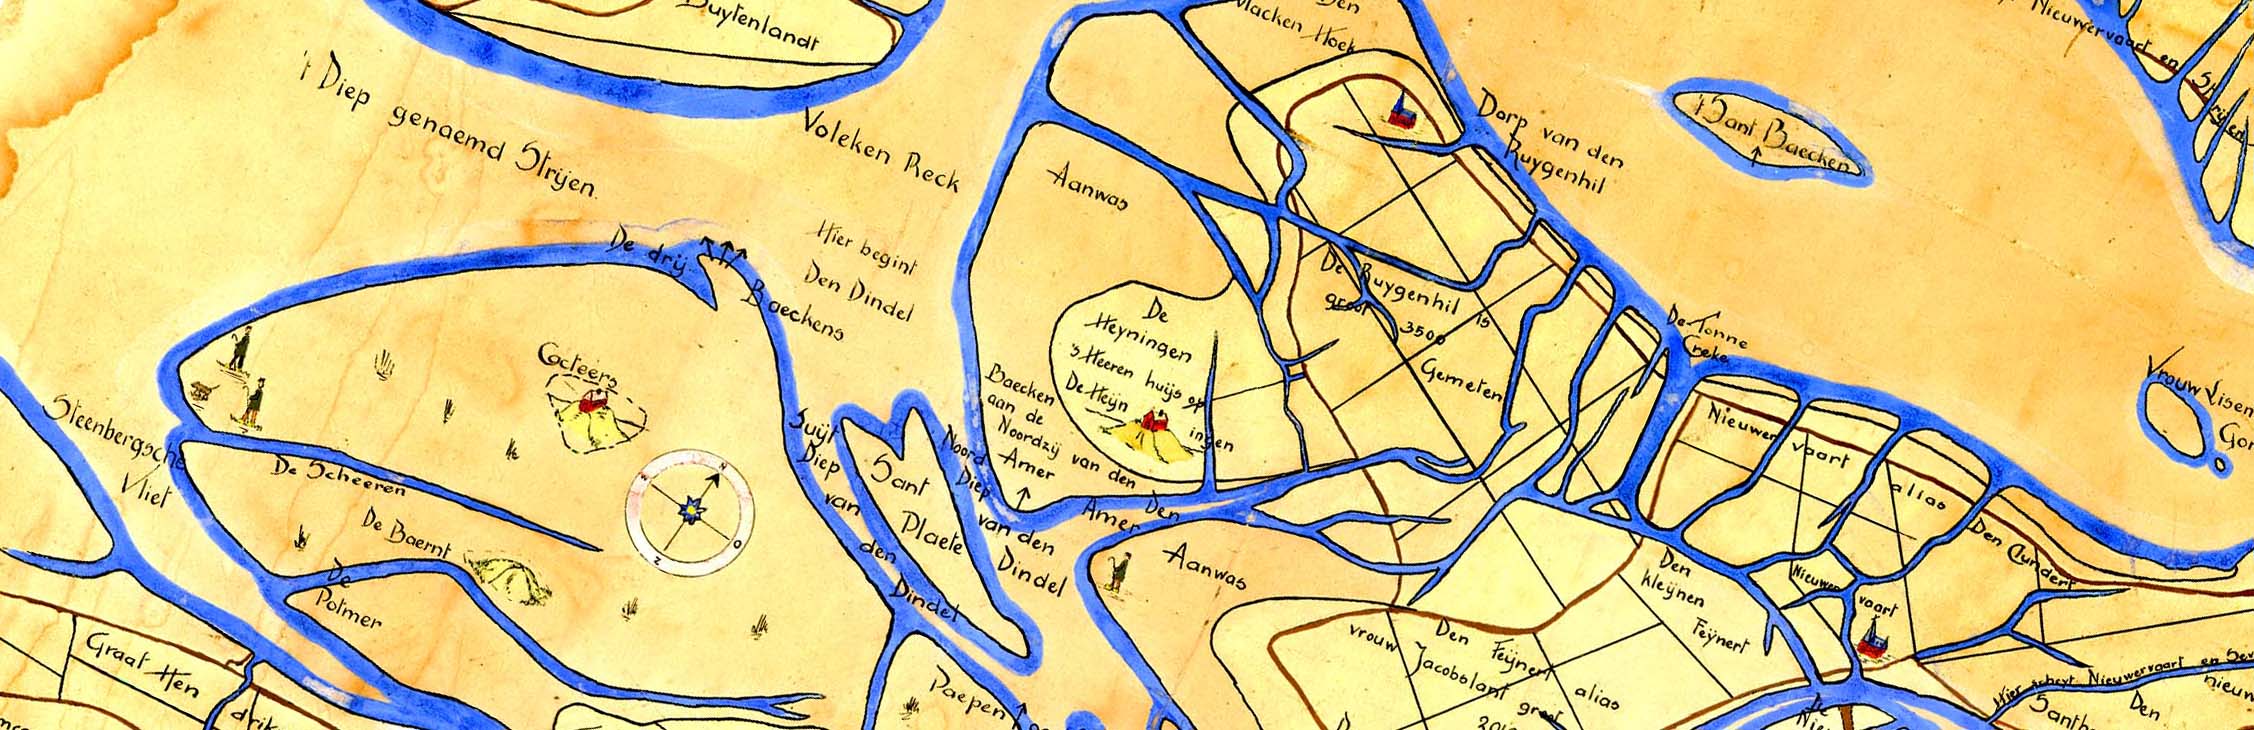 De oudste kaarten van West Brabant